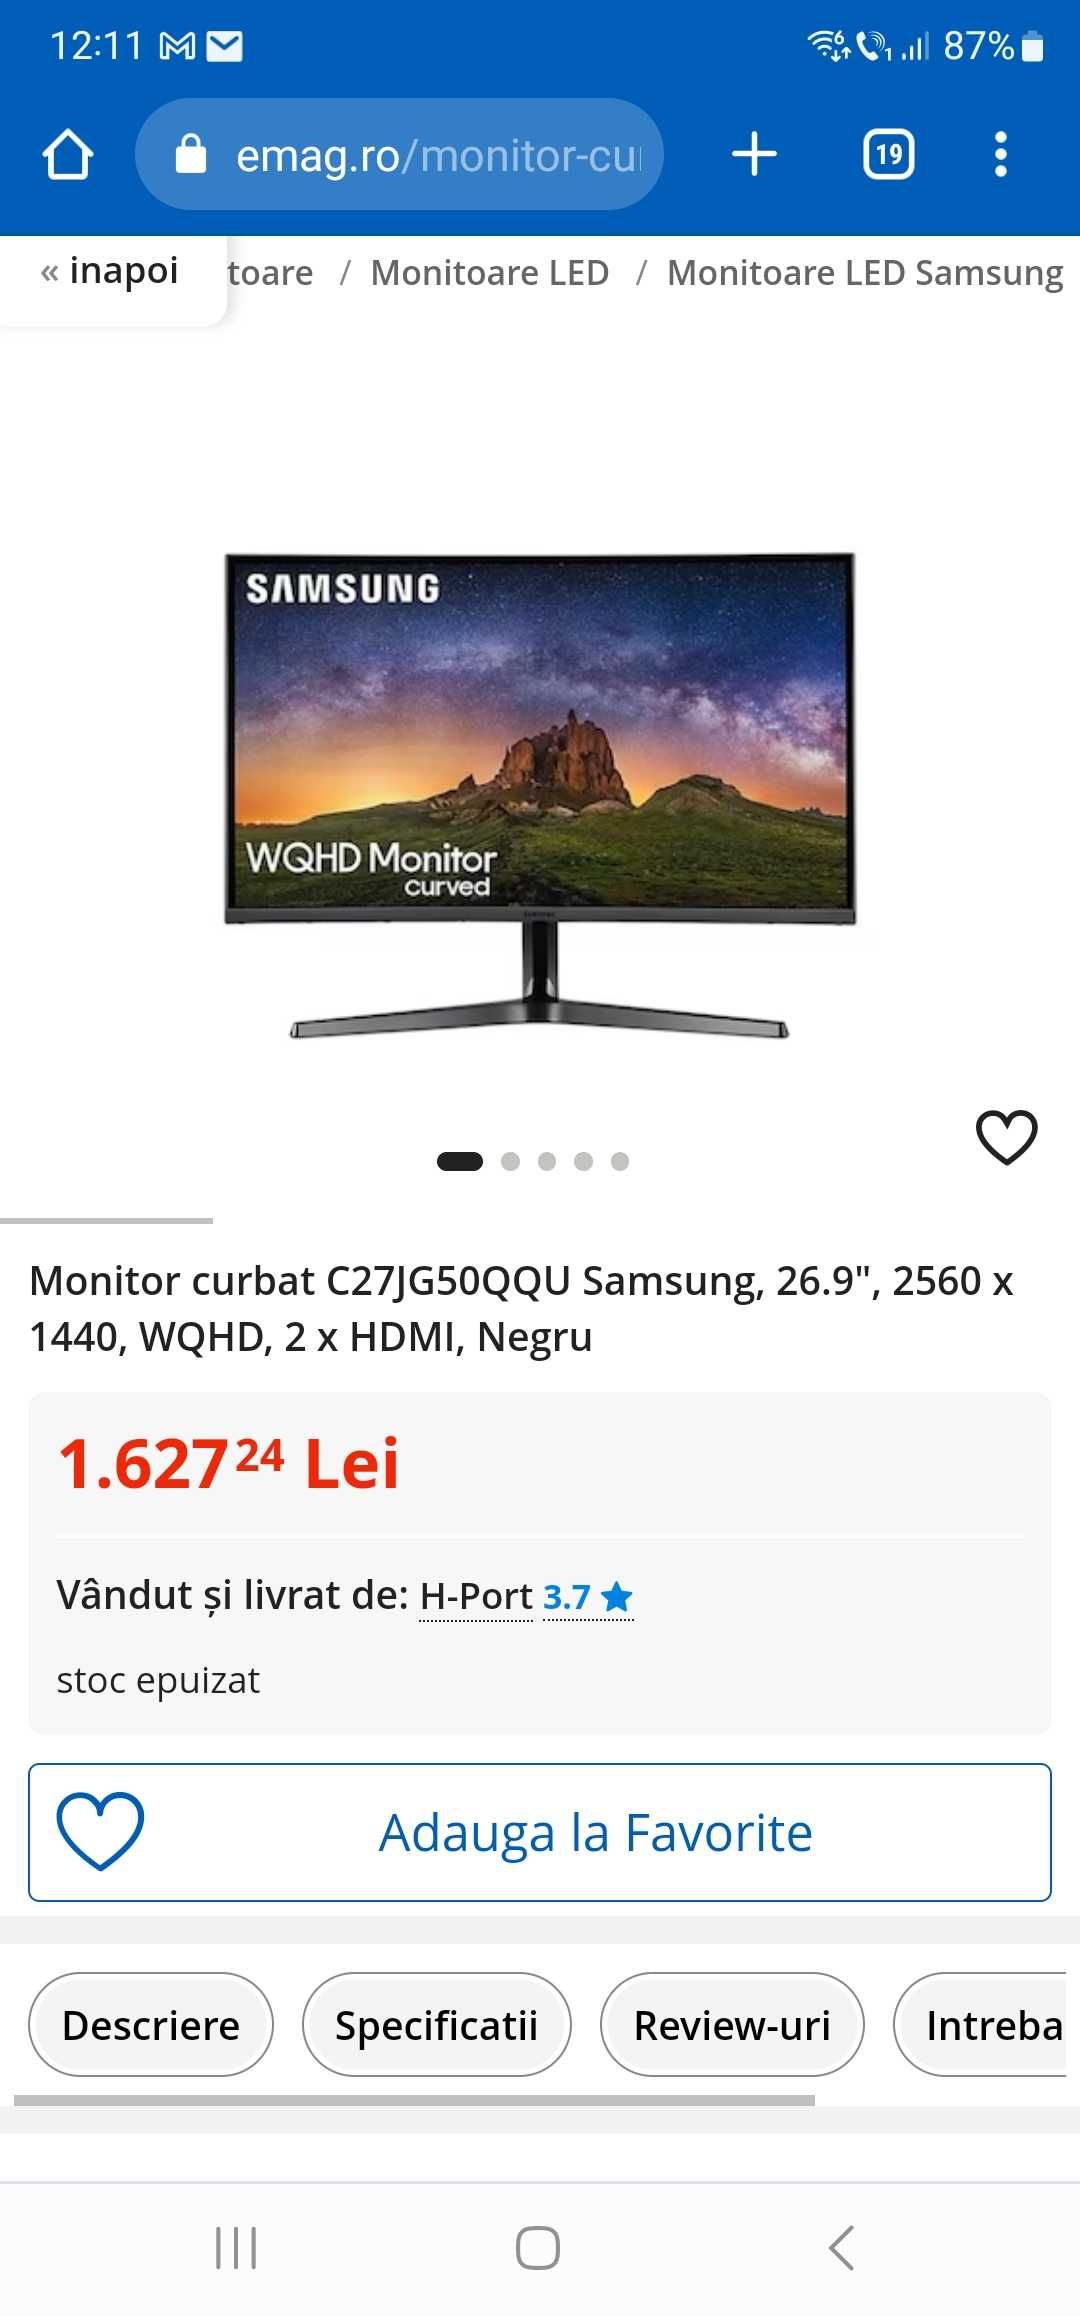 Monitor curbat C27JG50QQU Samsung, 26.9", 2560 x 1440, WQHD, 2 x HDMI